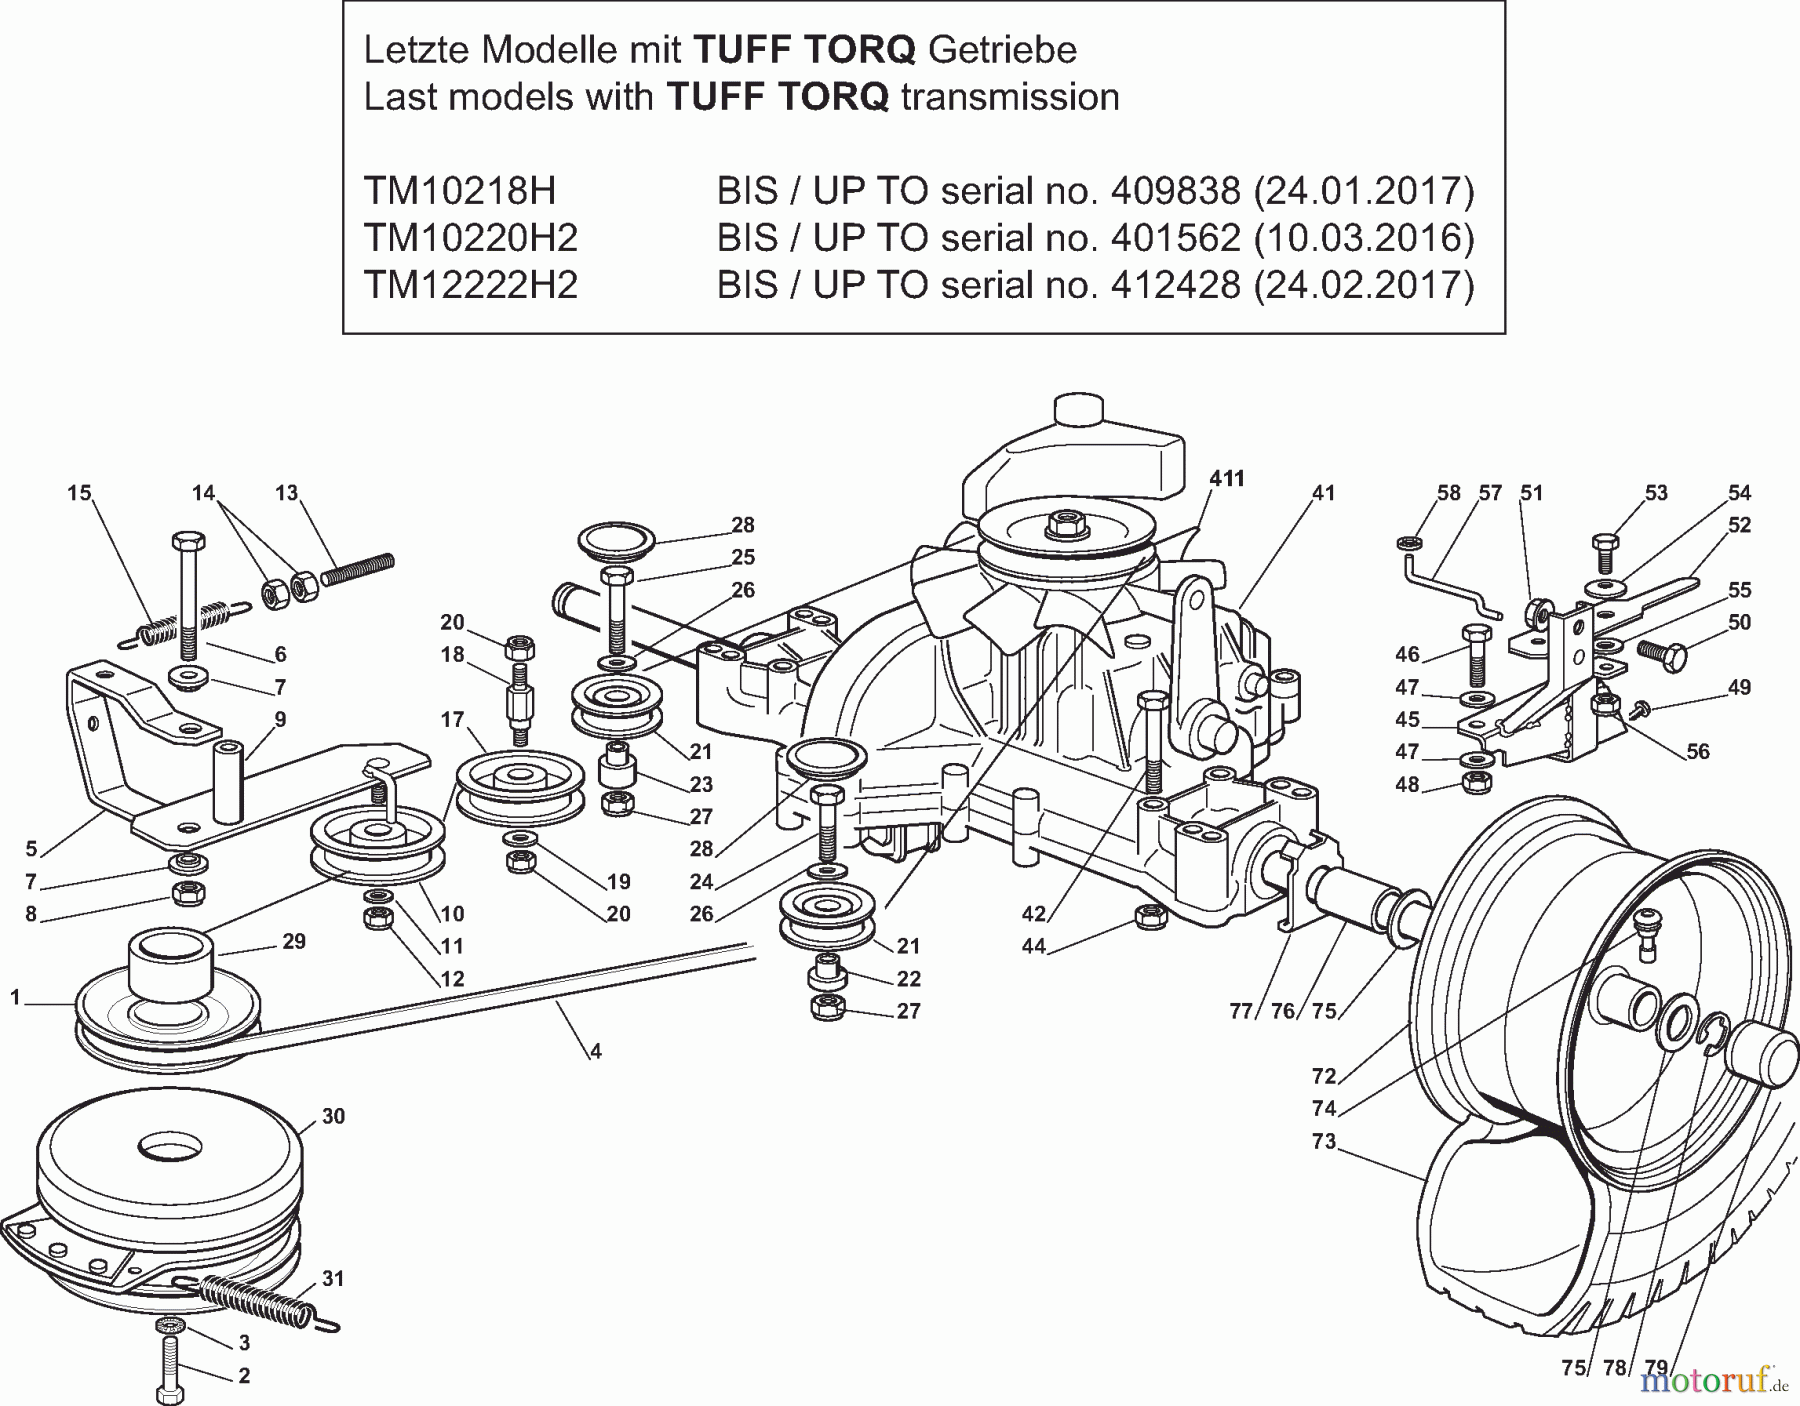  Dolmar Rasentraktoren TM12222H2 TM12222H2 (2015-2019) 6y  Getriebe TUFF TORQ